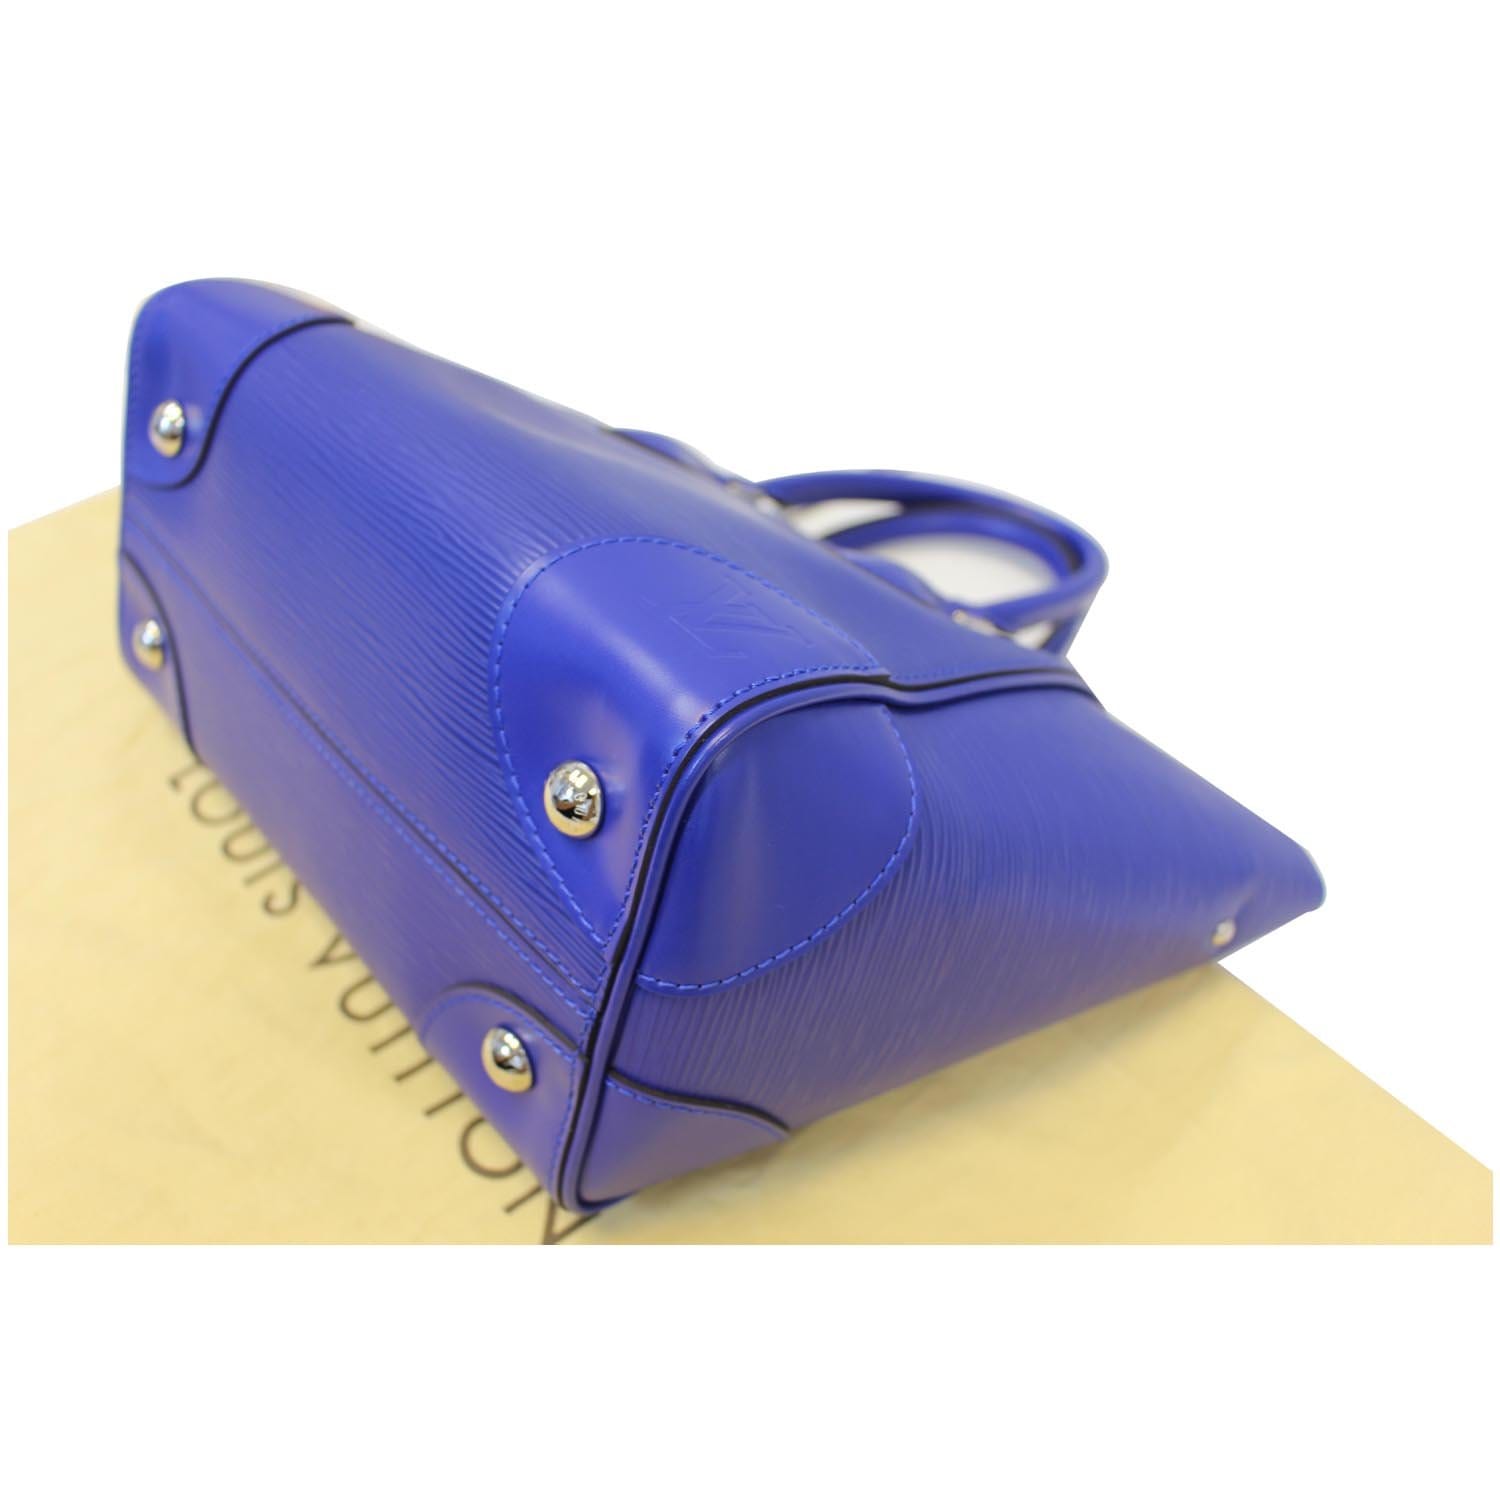 Louis Vuitton Epi Pochette Félicie w/ Insert - Neutrals Shoulder Bags,  Handbags - LOU802537